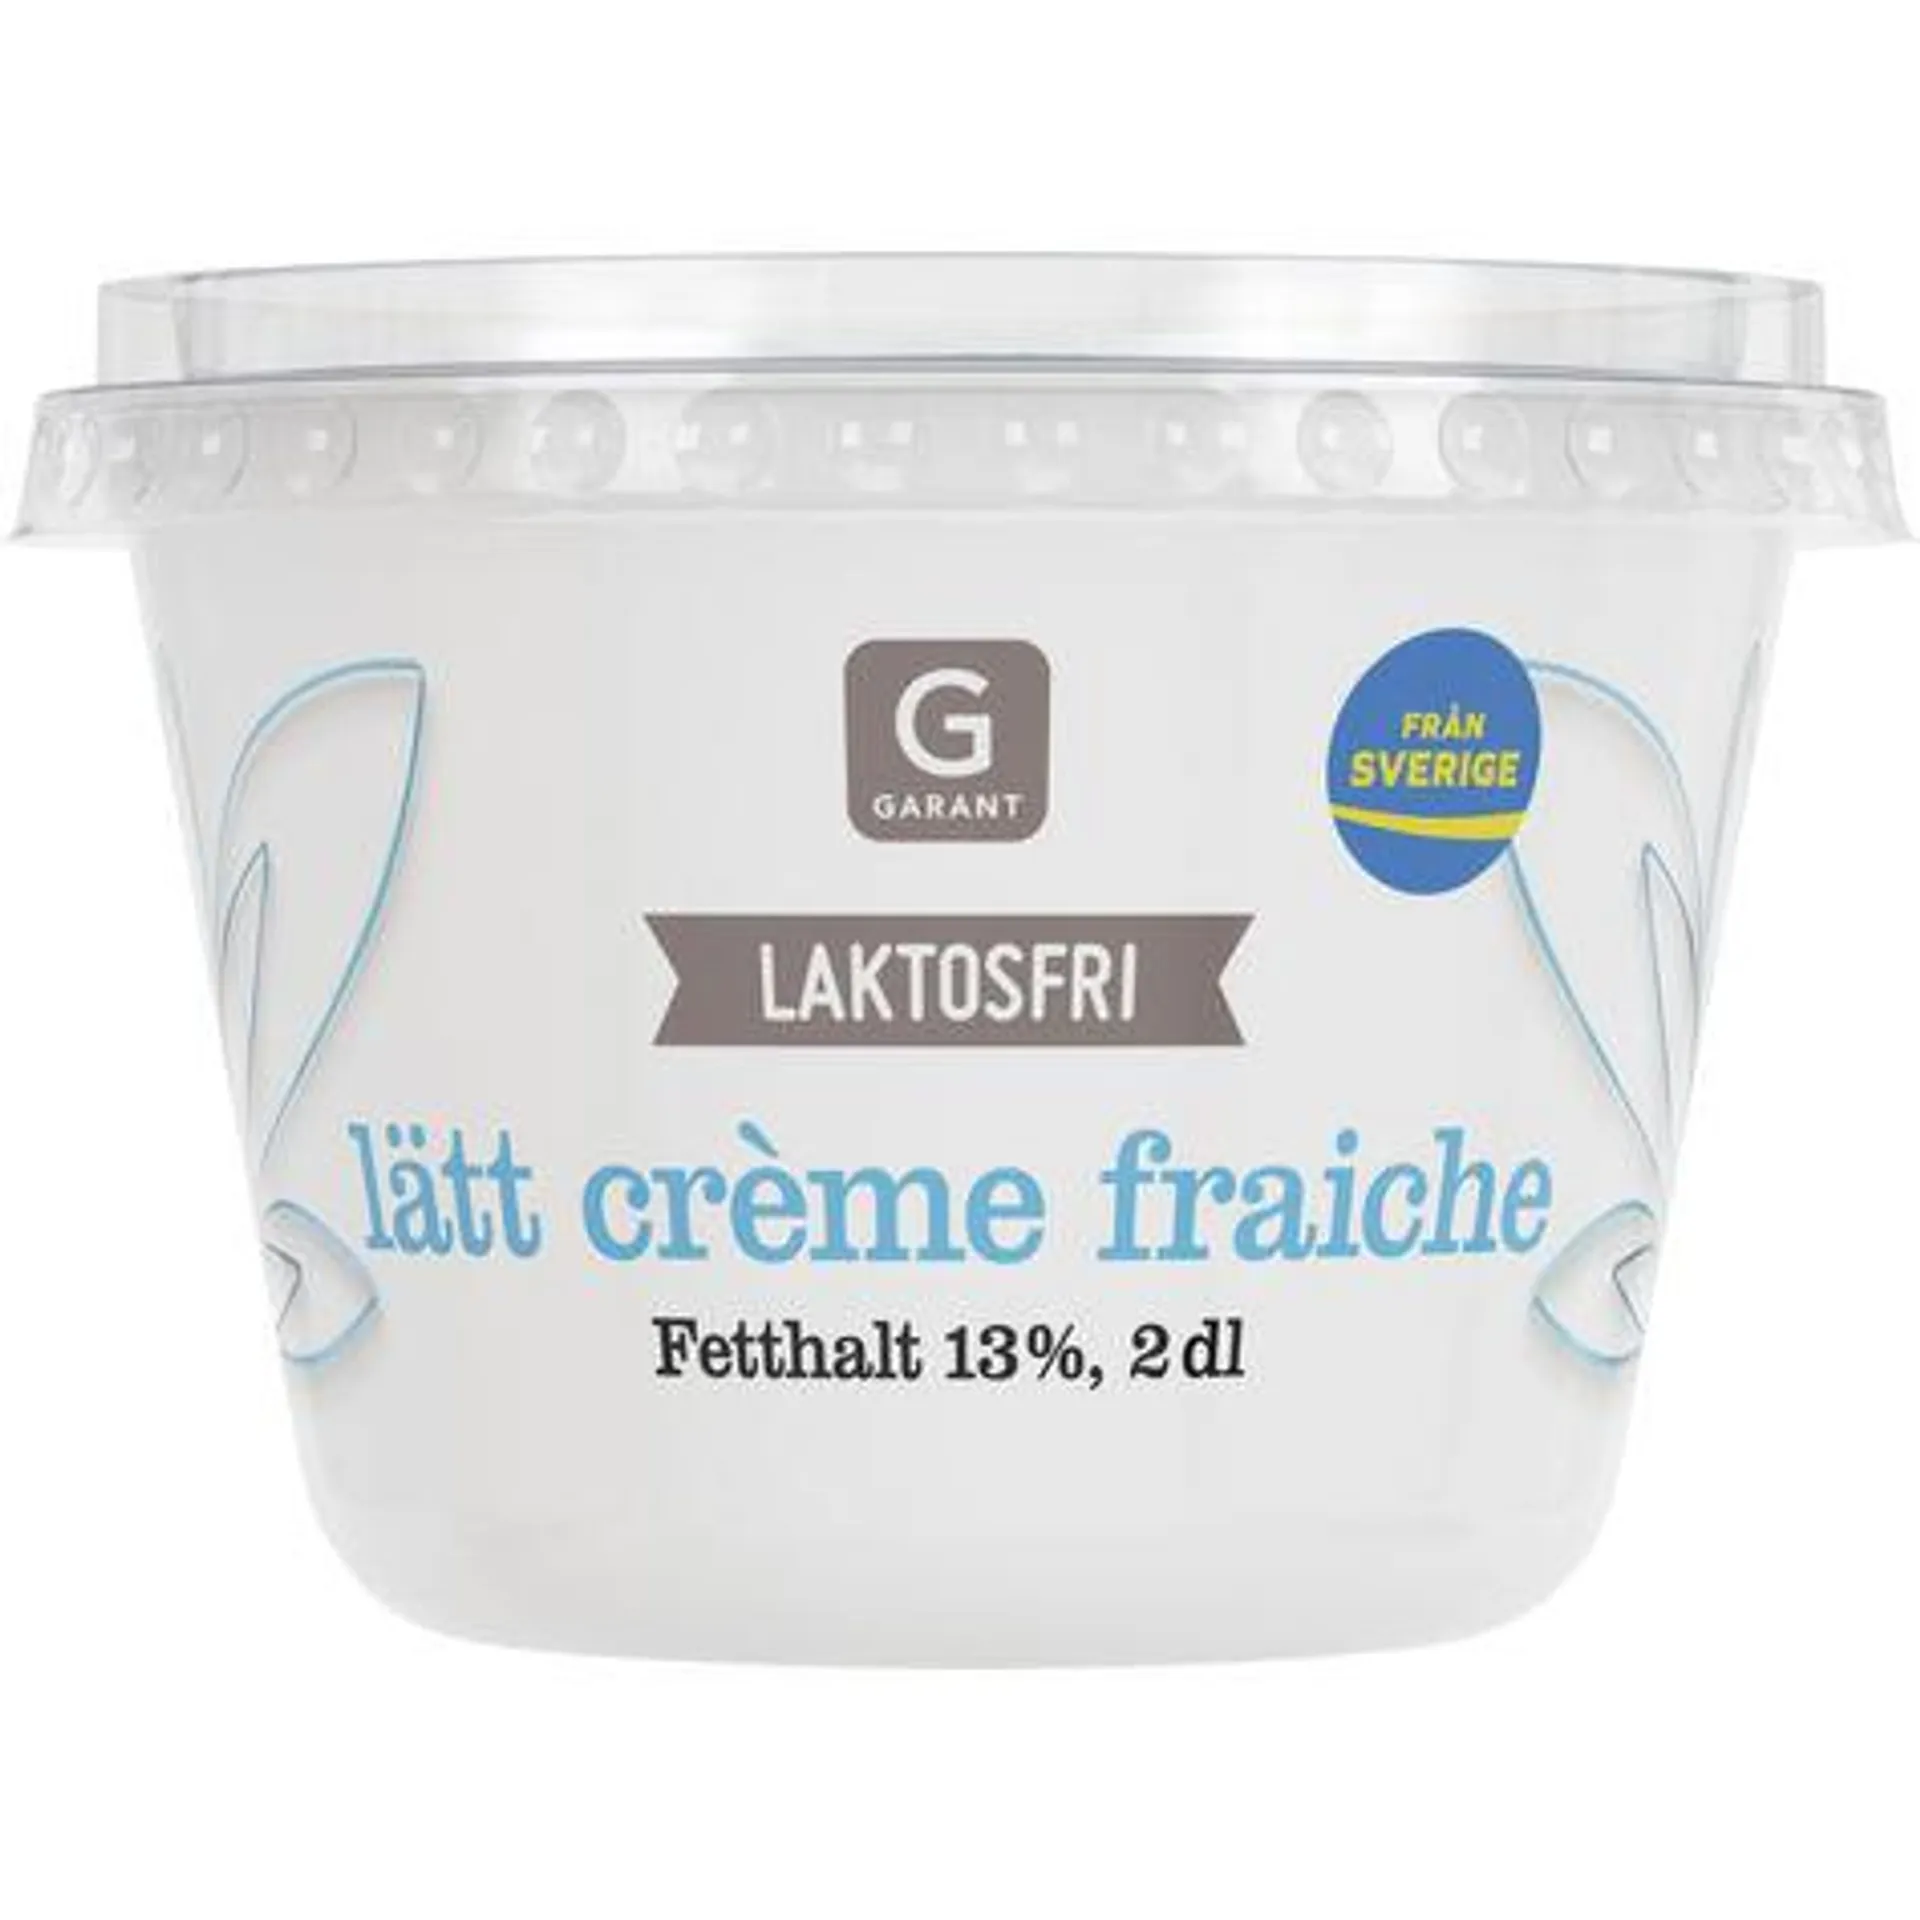 Crème Fraiche Lätt Laktosfri 13%